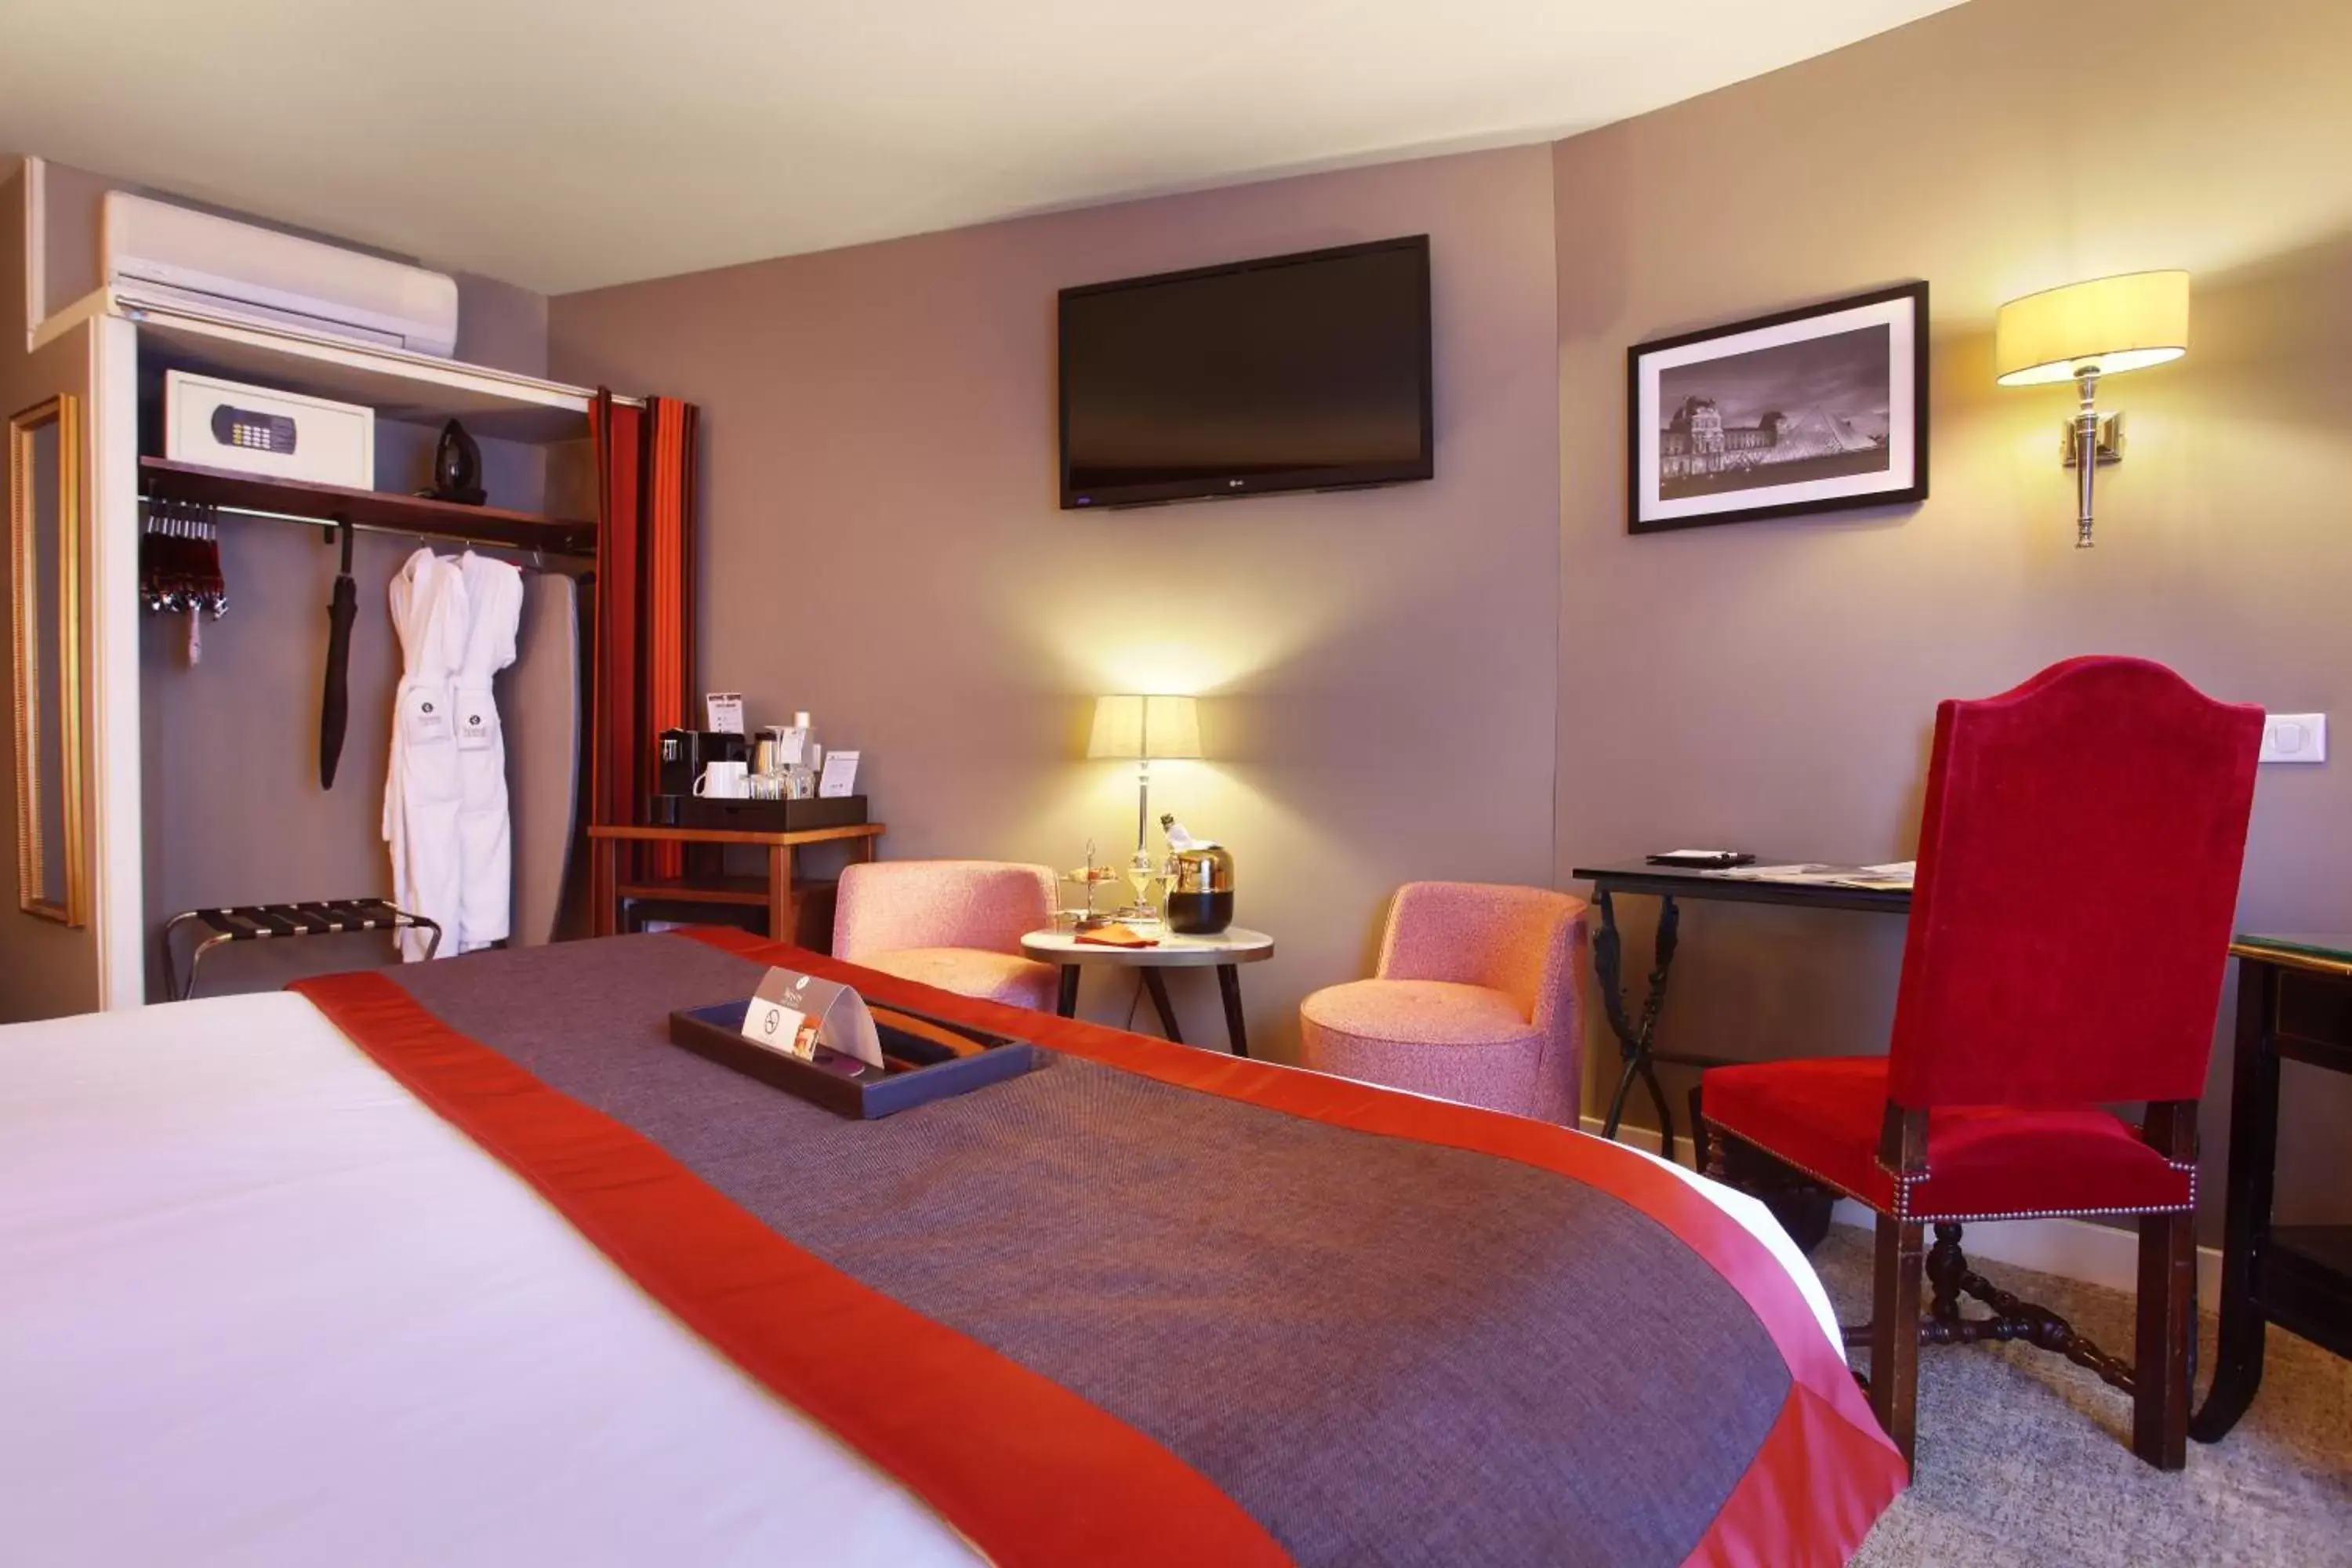 Bedroom, TV/Entertainment Center in Hotel Trianon Rive Gauche